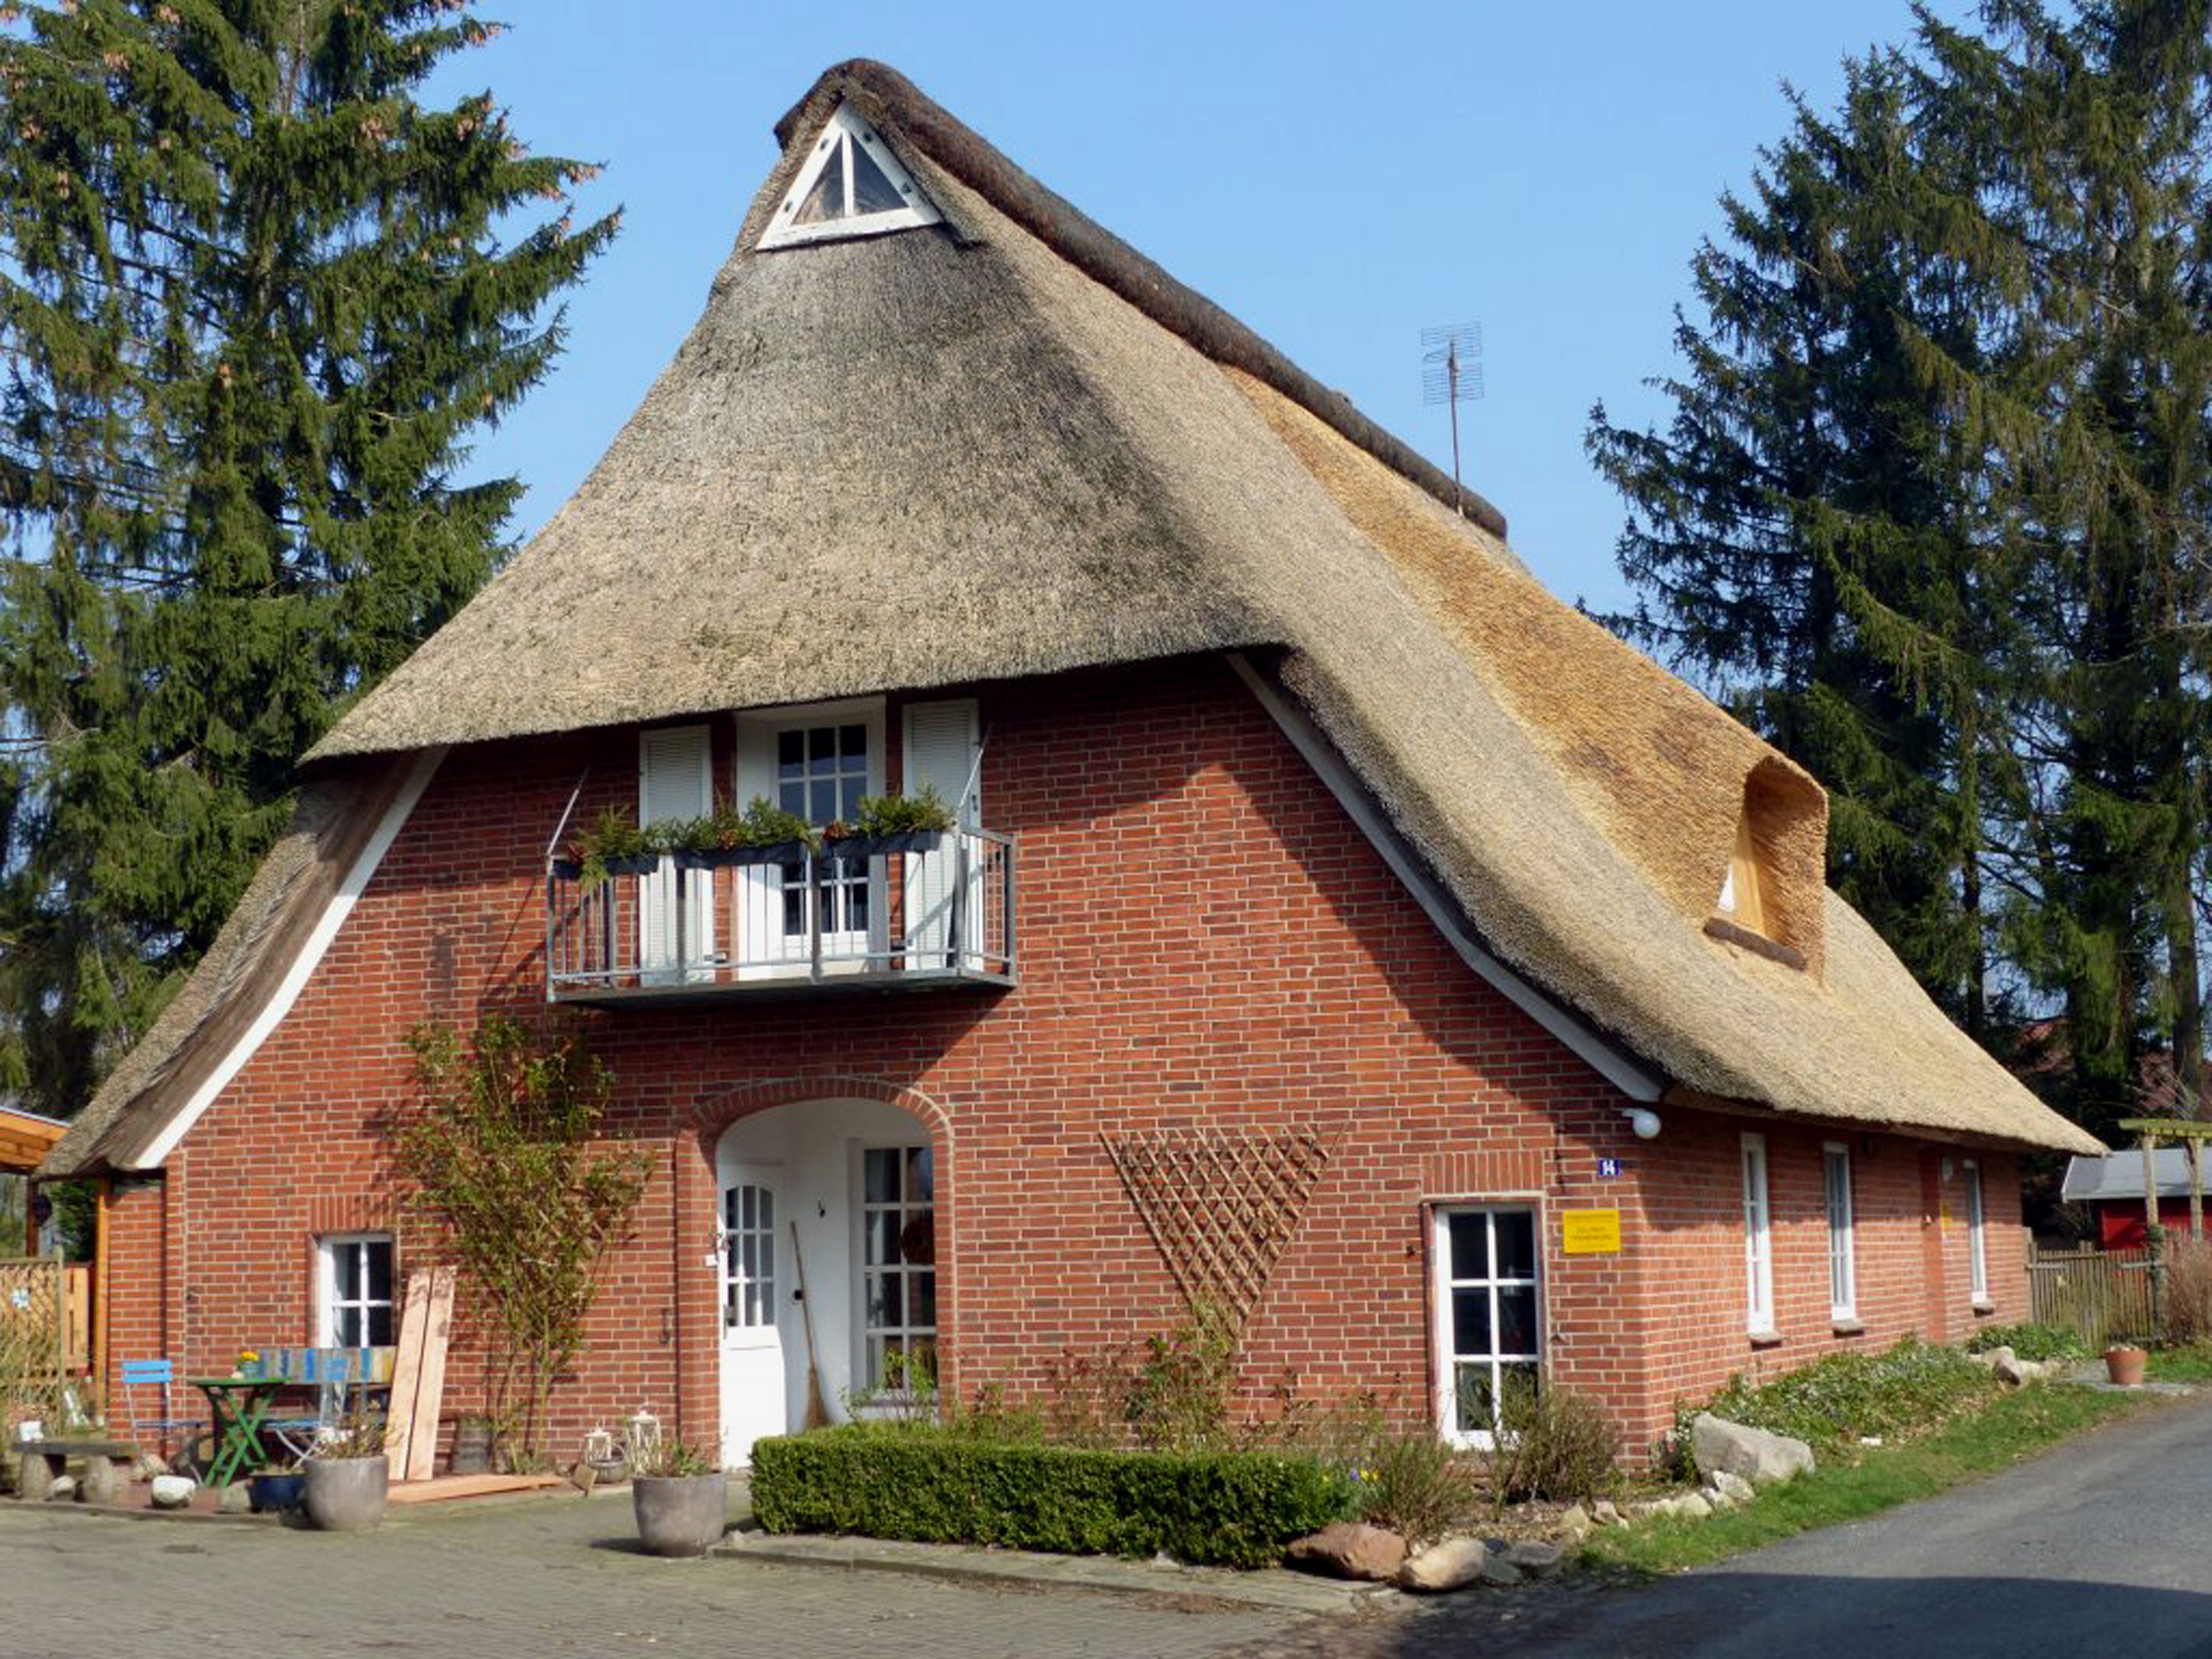 Gaststätte Zollhaus in der Samtgemeinde Bruchhausen-Vilsen - Flecken Bruchhausen-Vilsen - OT Weseloh (Kreismuseum Syke CC BY-NC-SA)